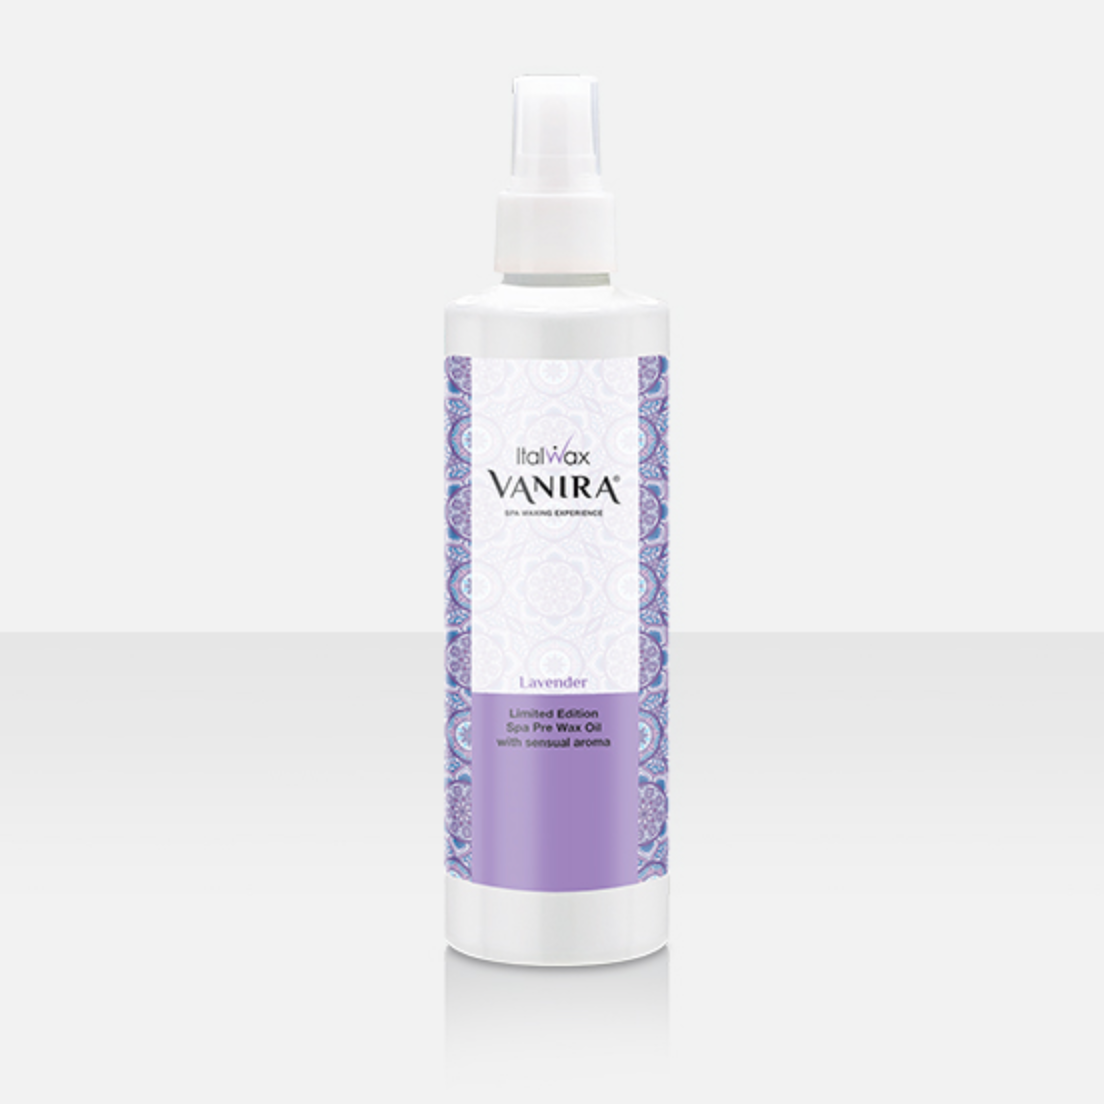 Prewax oil Lavender 250ml.